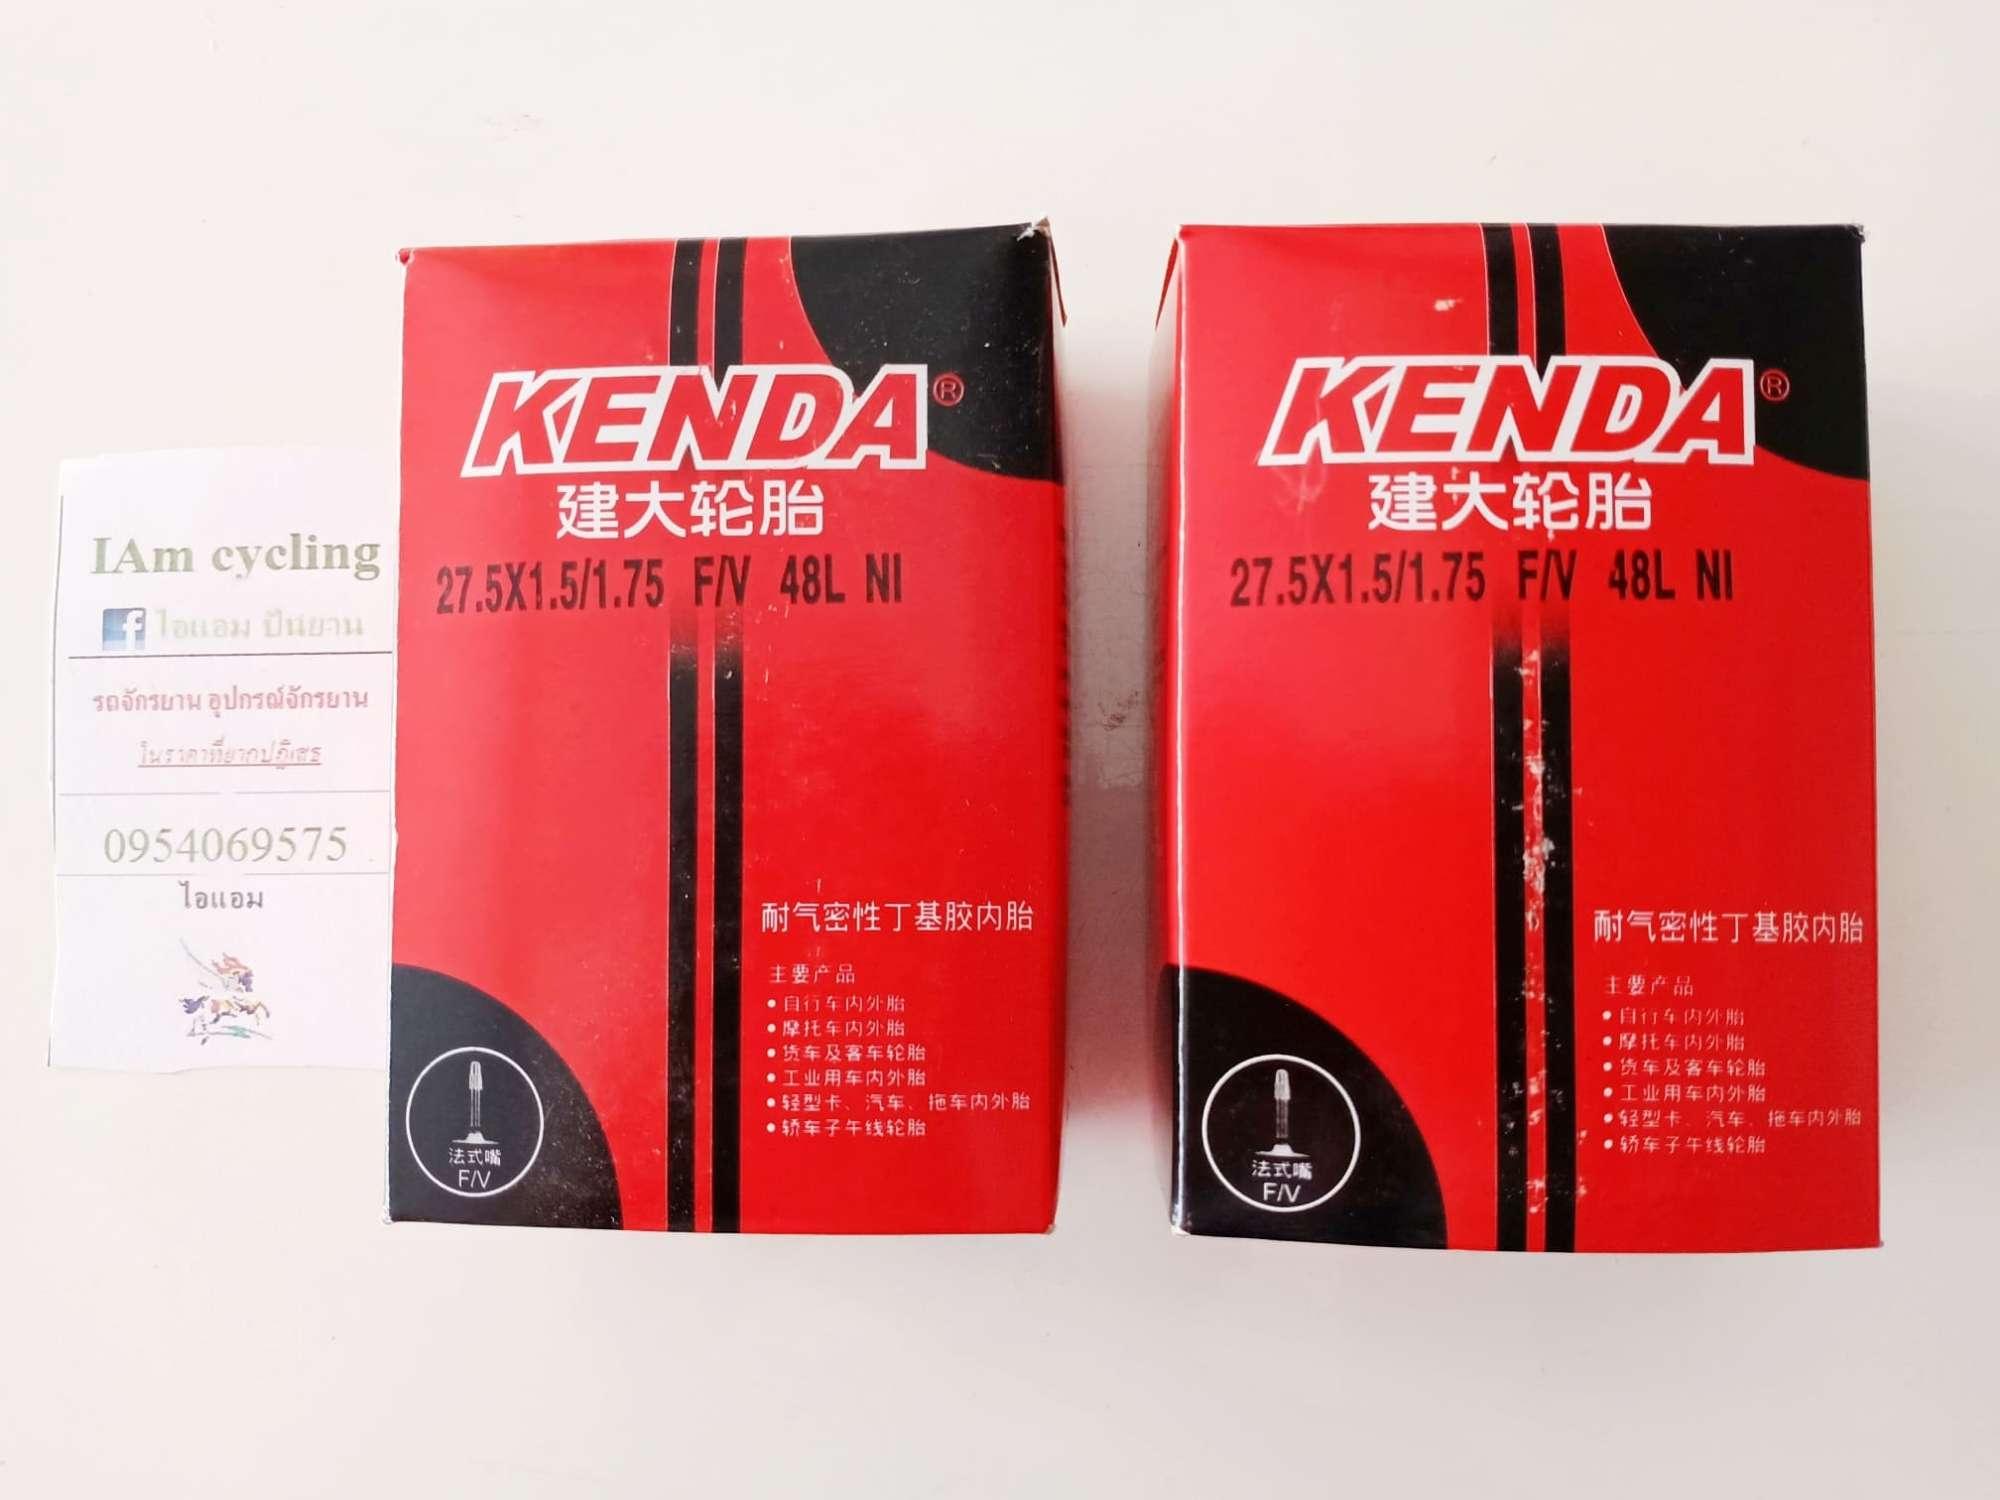 แพ็คคู่สุดคุ้ม!!! ยางใน kenda 27.5x1.5/1.75 FV48(จุ๊บเล็ก)  (ซื้อครบ 500 บาทส่งฟรี)